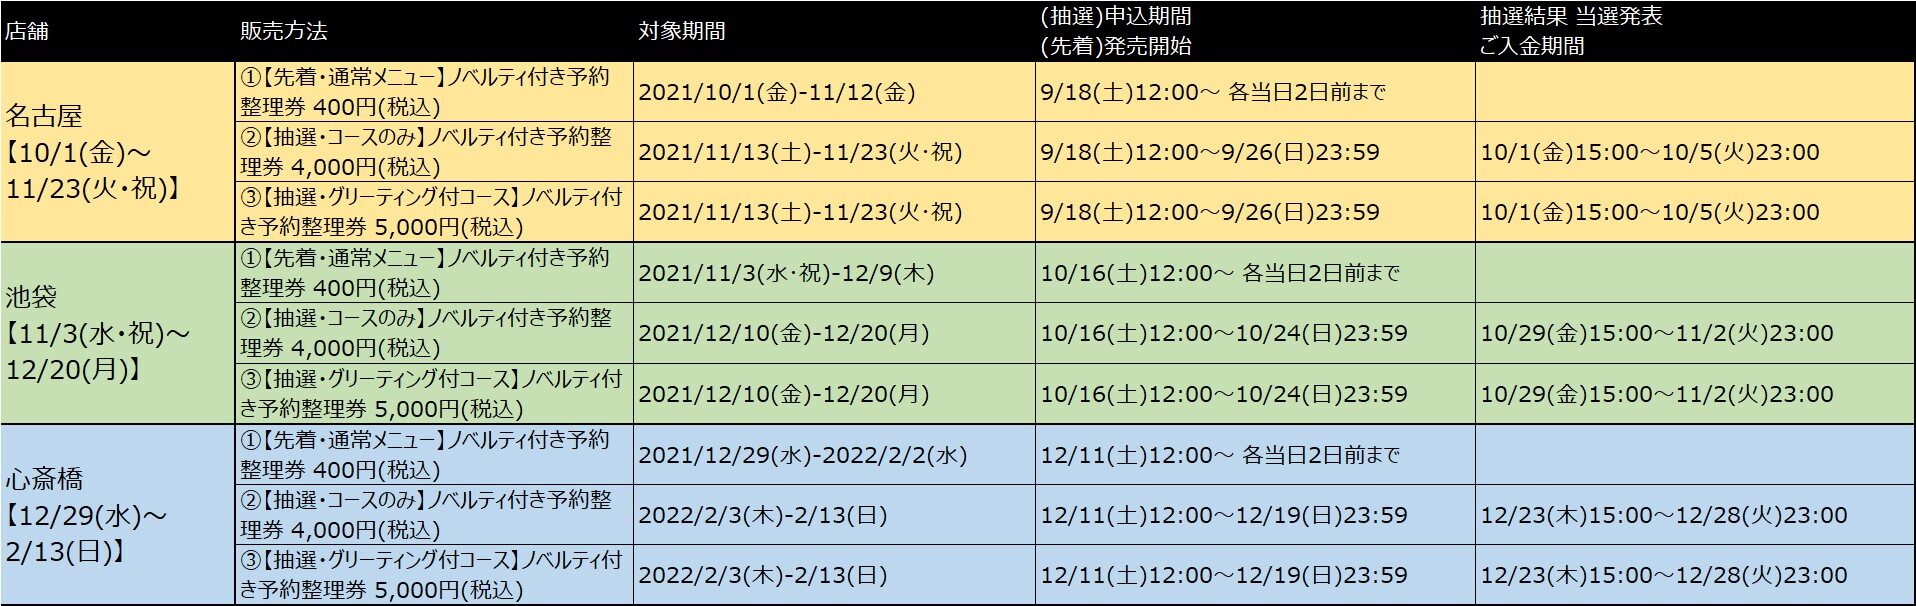 usamaru LT schedule